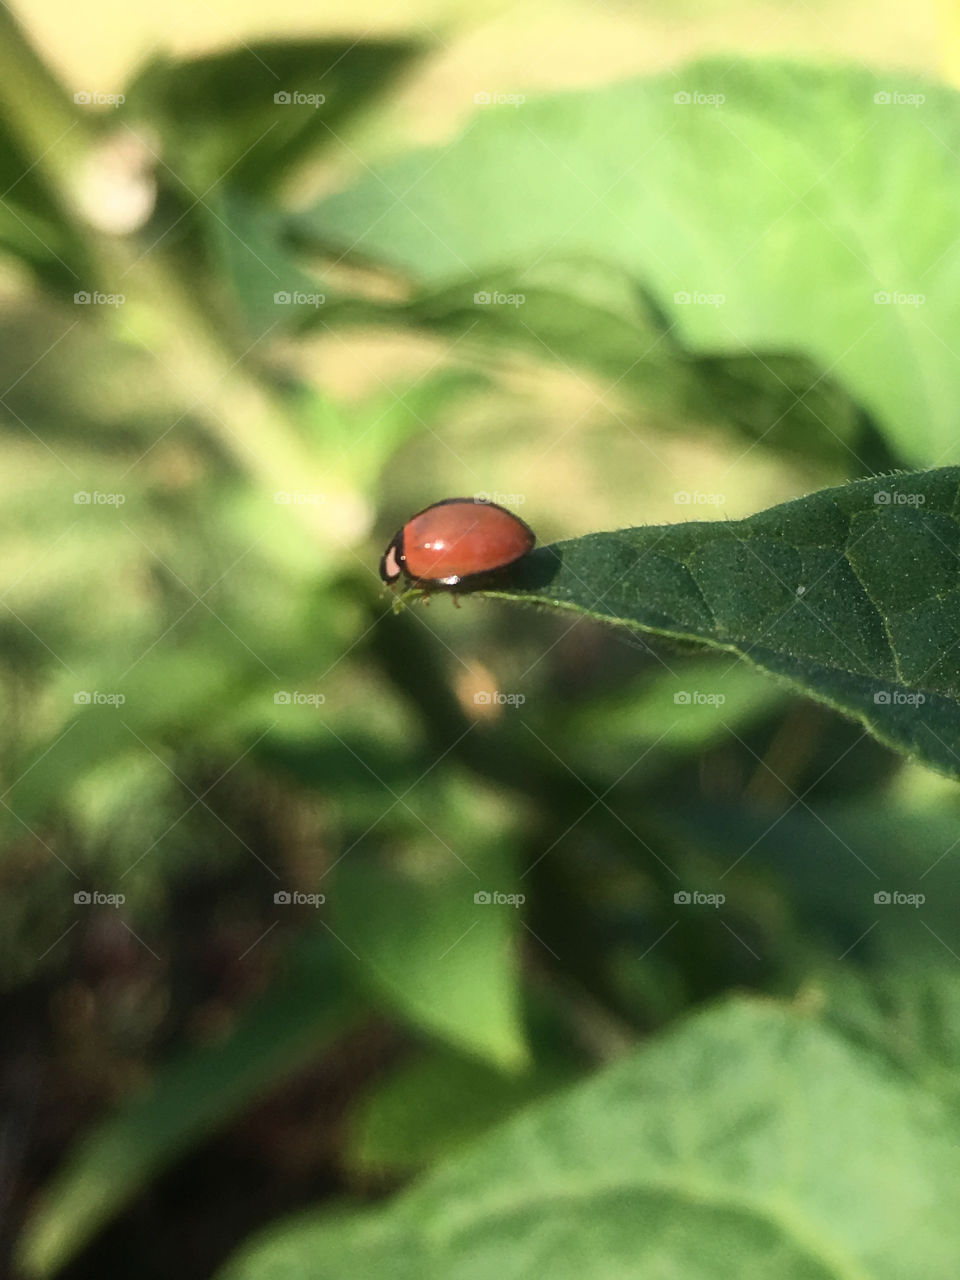 Ladybug on a leave